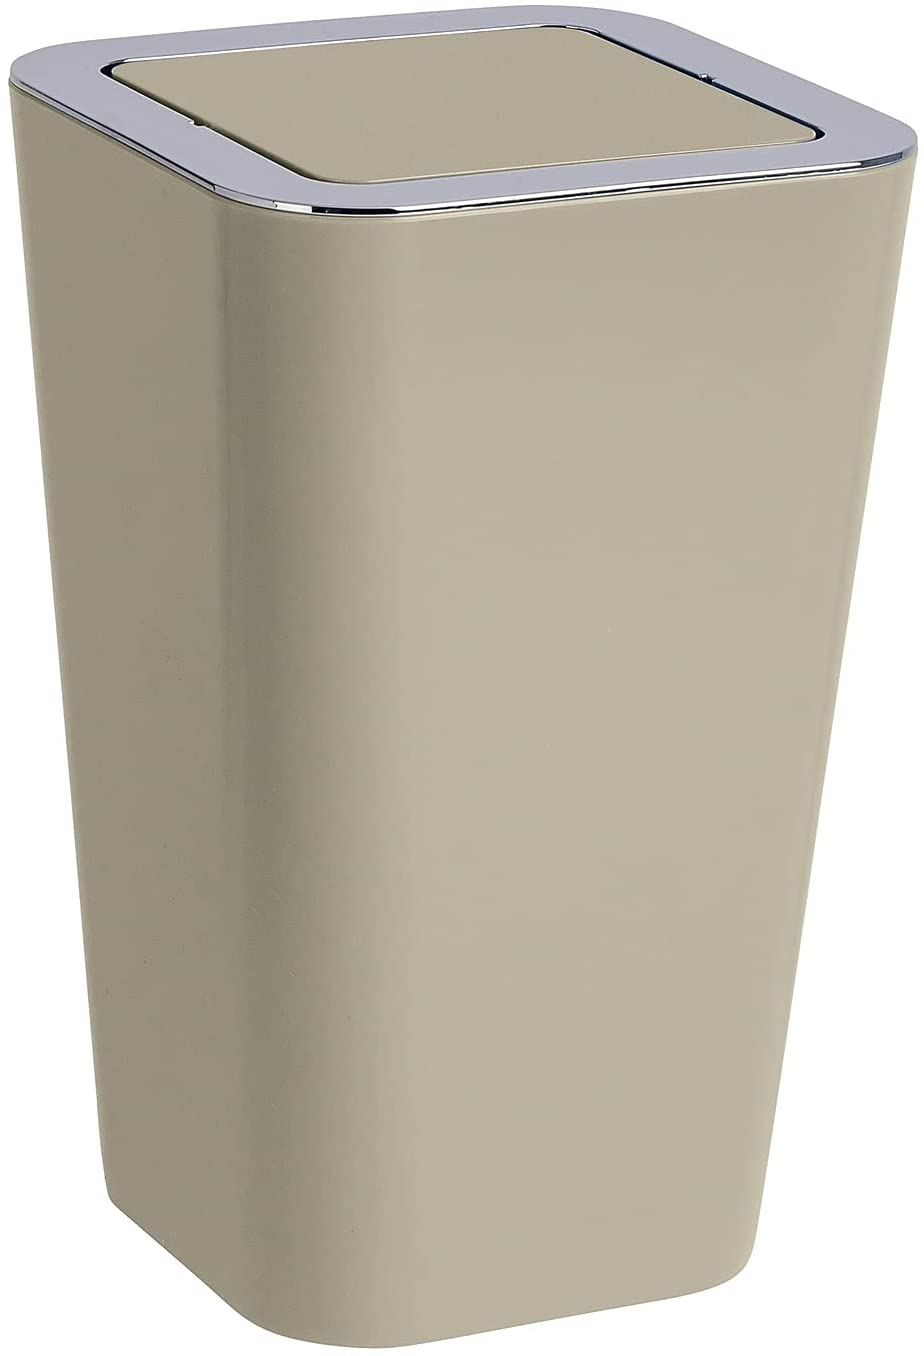 Schwingdeckeleimer Candy Taupe - Abfallbehälter mit Schwingdeckel Fassungsvermögen: 6 l, Polystyrol, 18 x 28.5 x 18 cm, Taupe